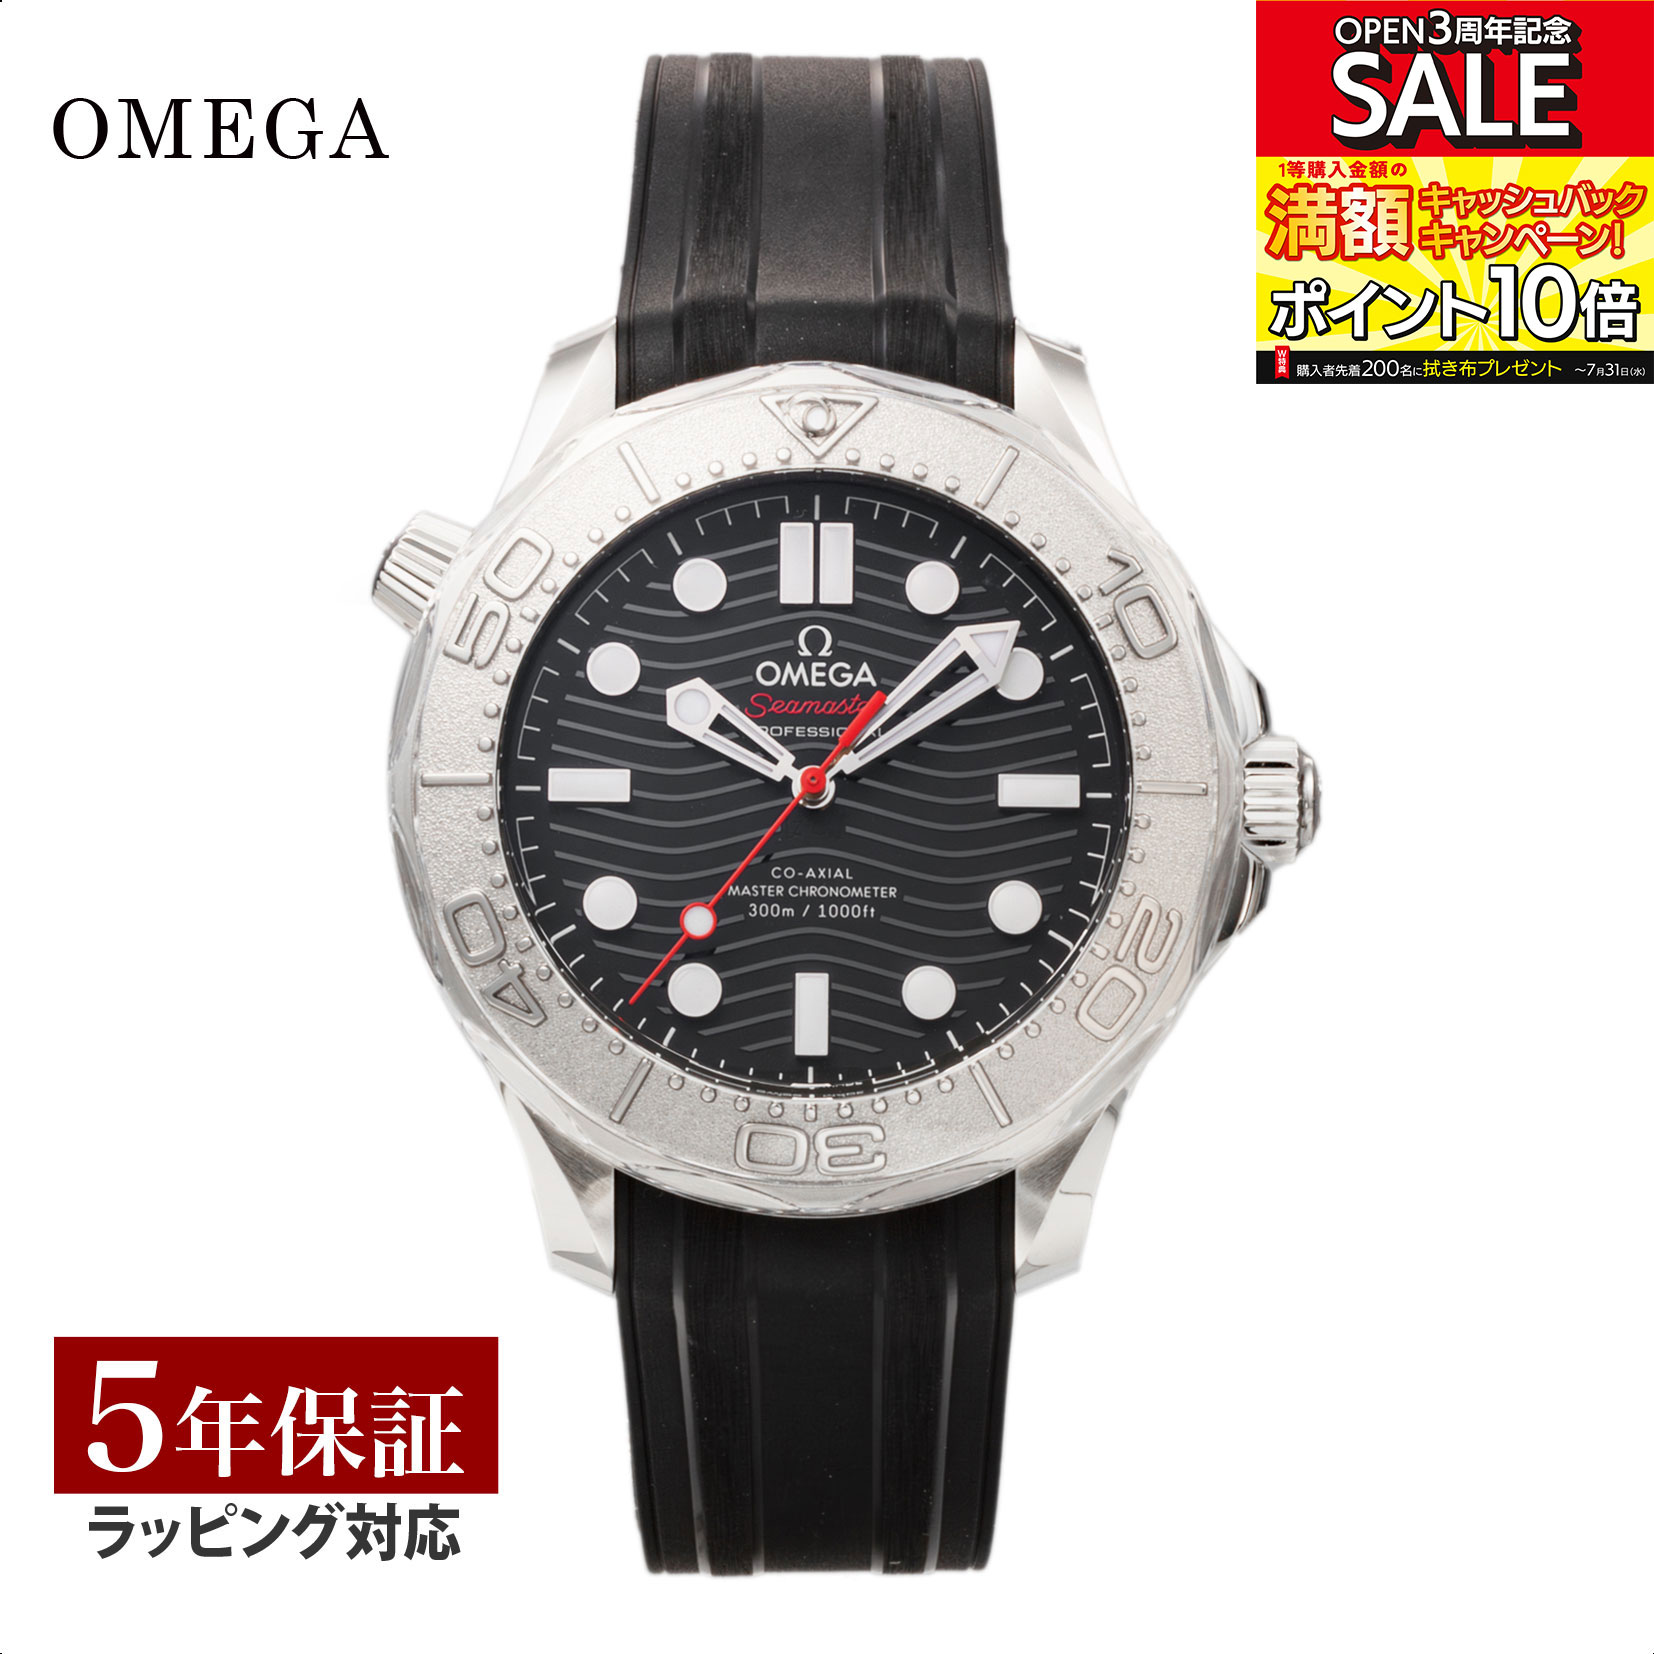 オメガ OMEGA メンズ 時計 シーマスター ダイバー 300M Seamaster Diver 300M コーアクシャル自動巻 ブラック 210.32.42.20.01.002 腕時計 高級腕時計 ブランド